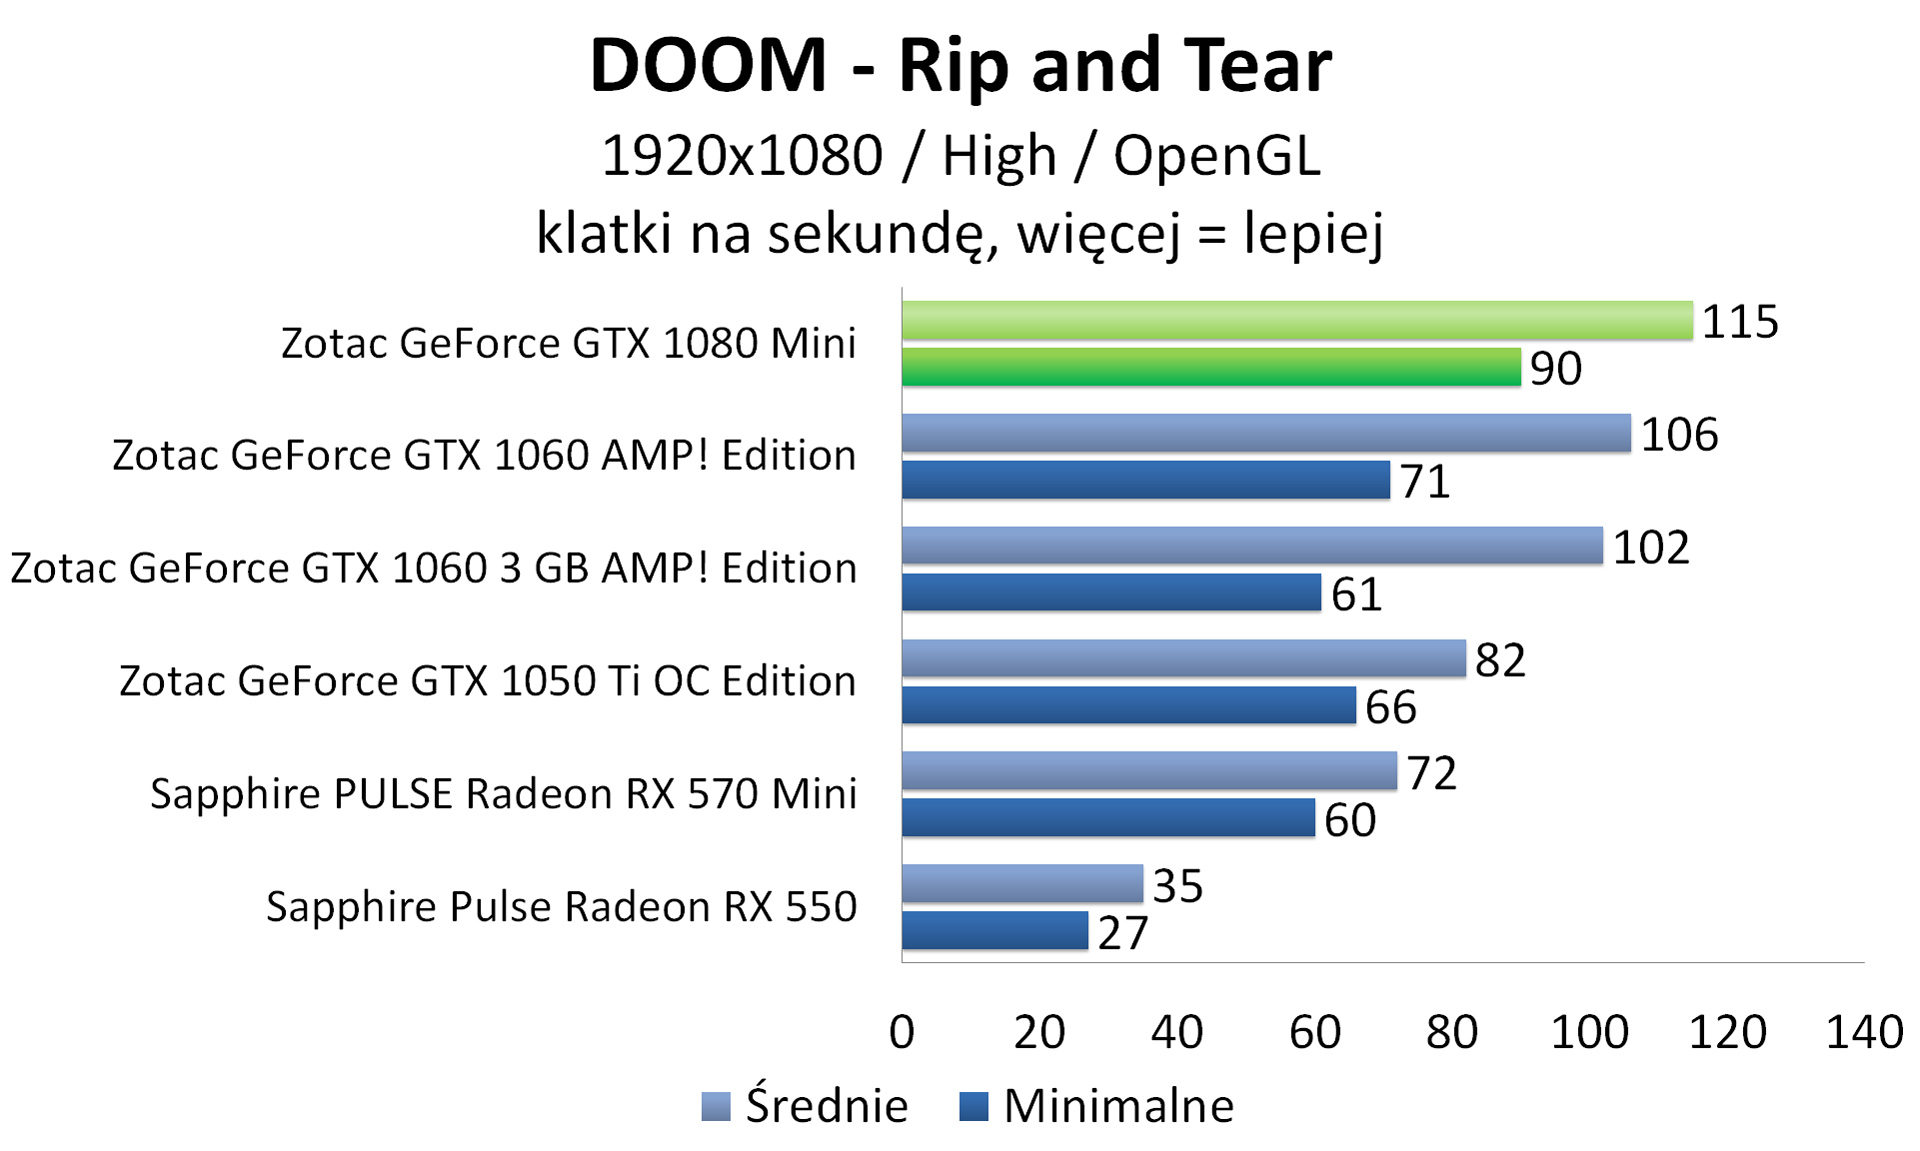 Zotac GeForce GTX 1080 Mini - DOOM - OpenGL